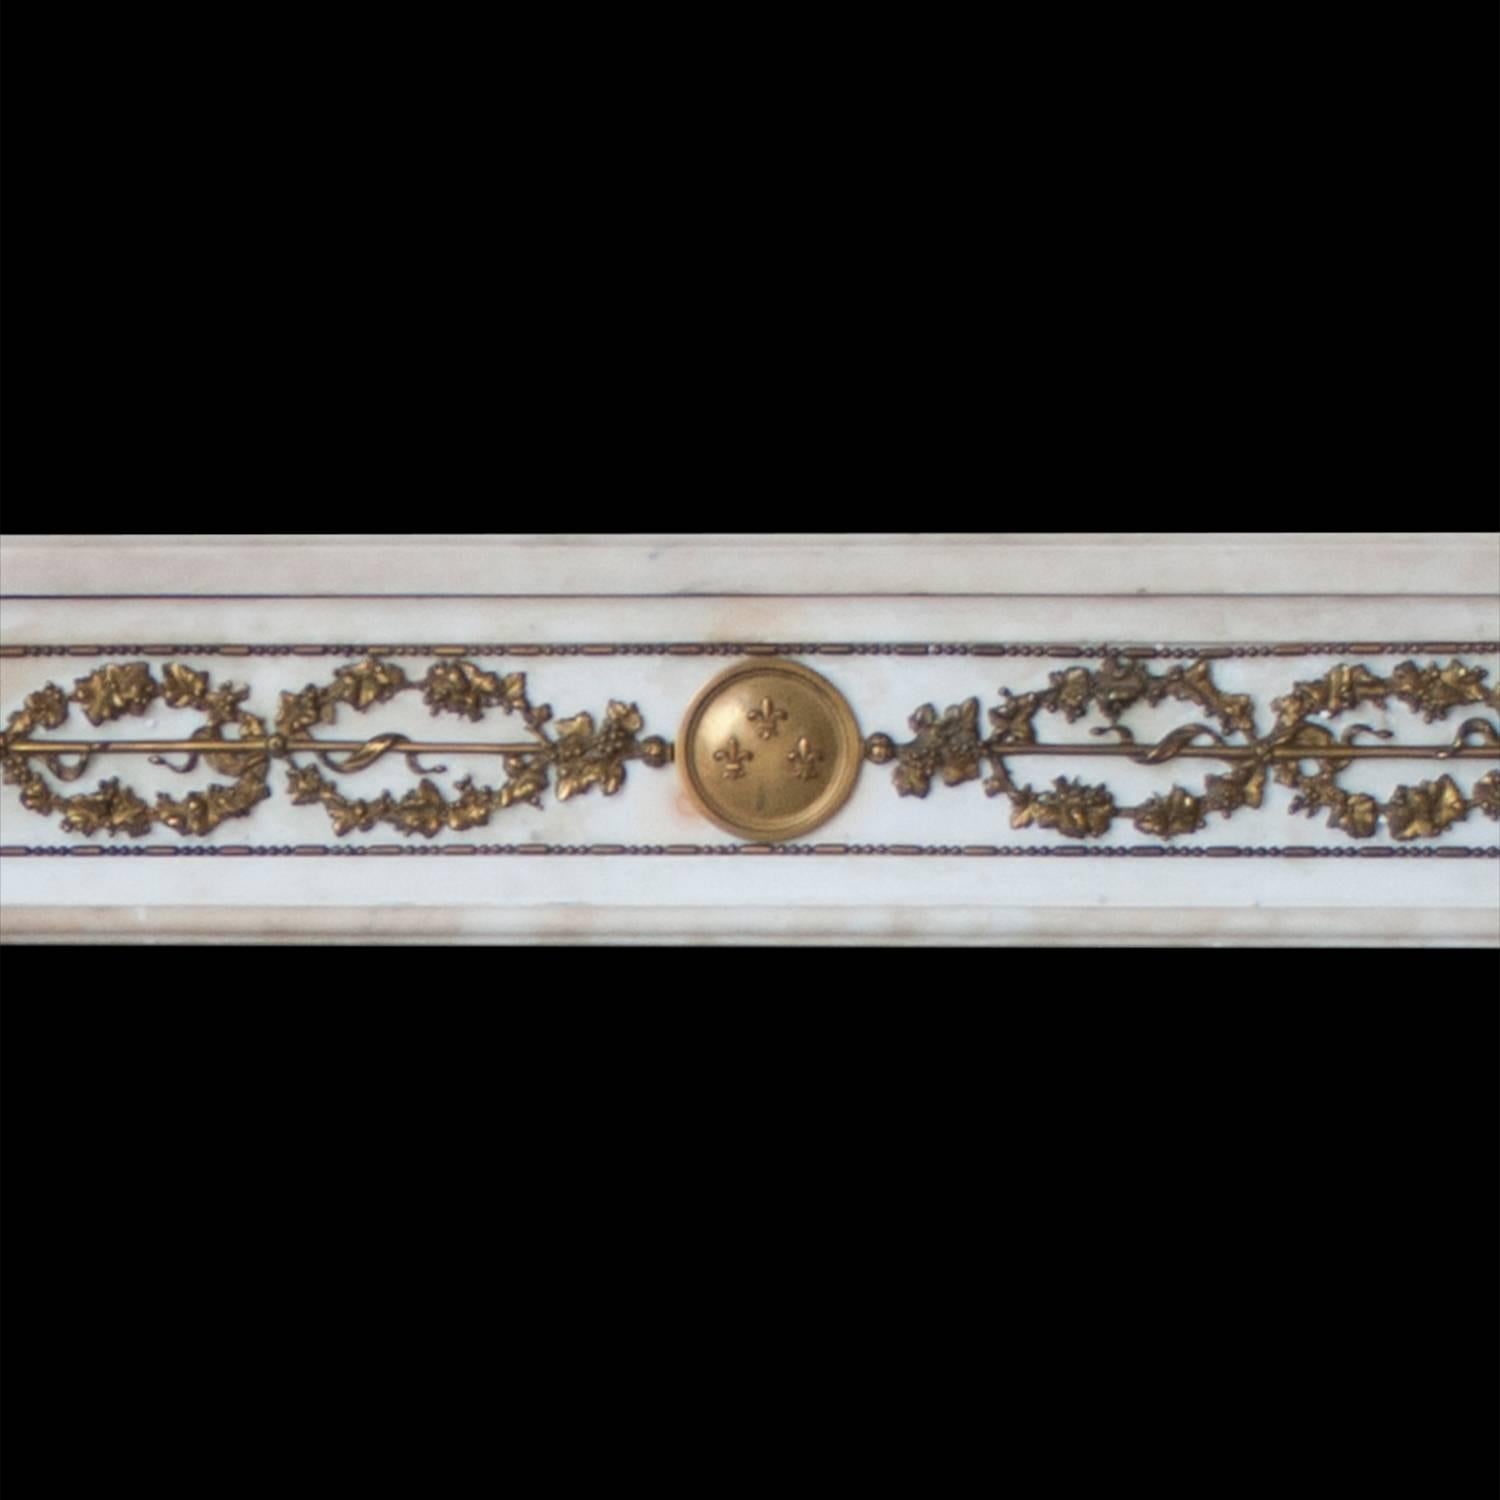 Ein Kaminsims im französischen Empire-Stil aus italienischem Marmor mit feinen Ormolu-Details.

Abmessungen der Öffnung: 48 1/4